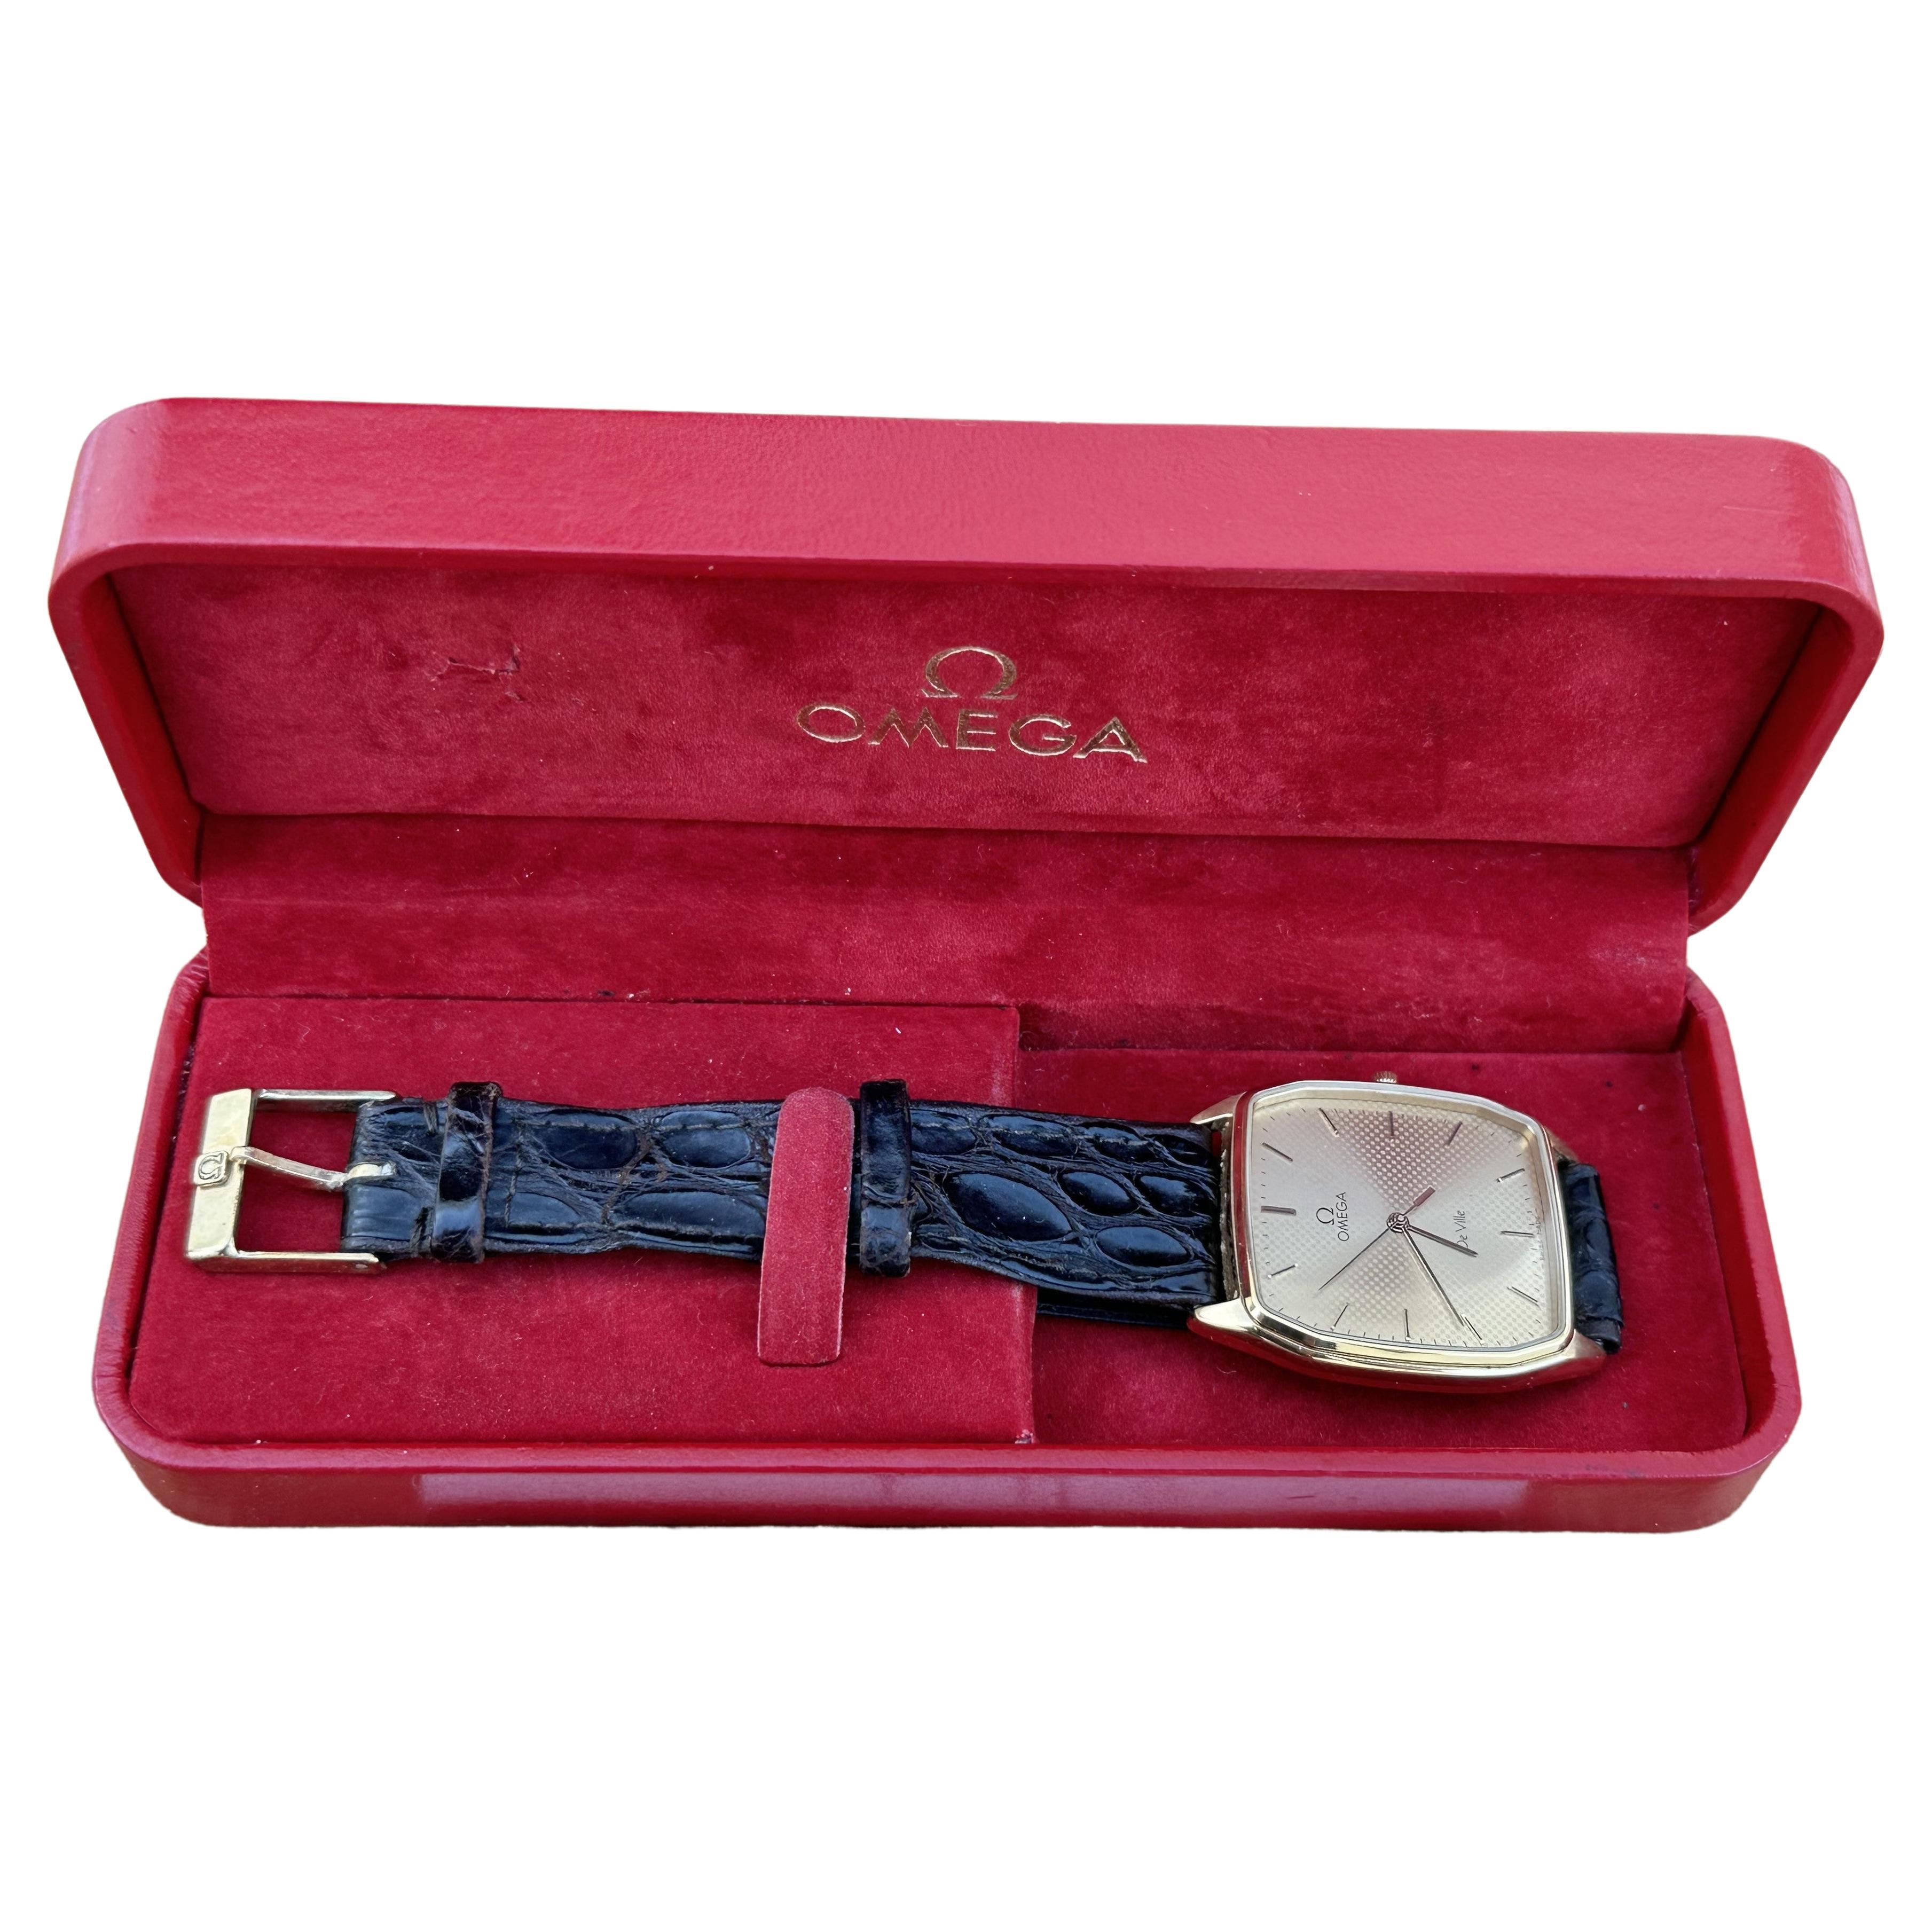 Omega De Ville 1417 Superbe montre vintage avec cadran à pois rares en plaqué or